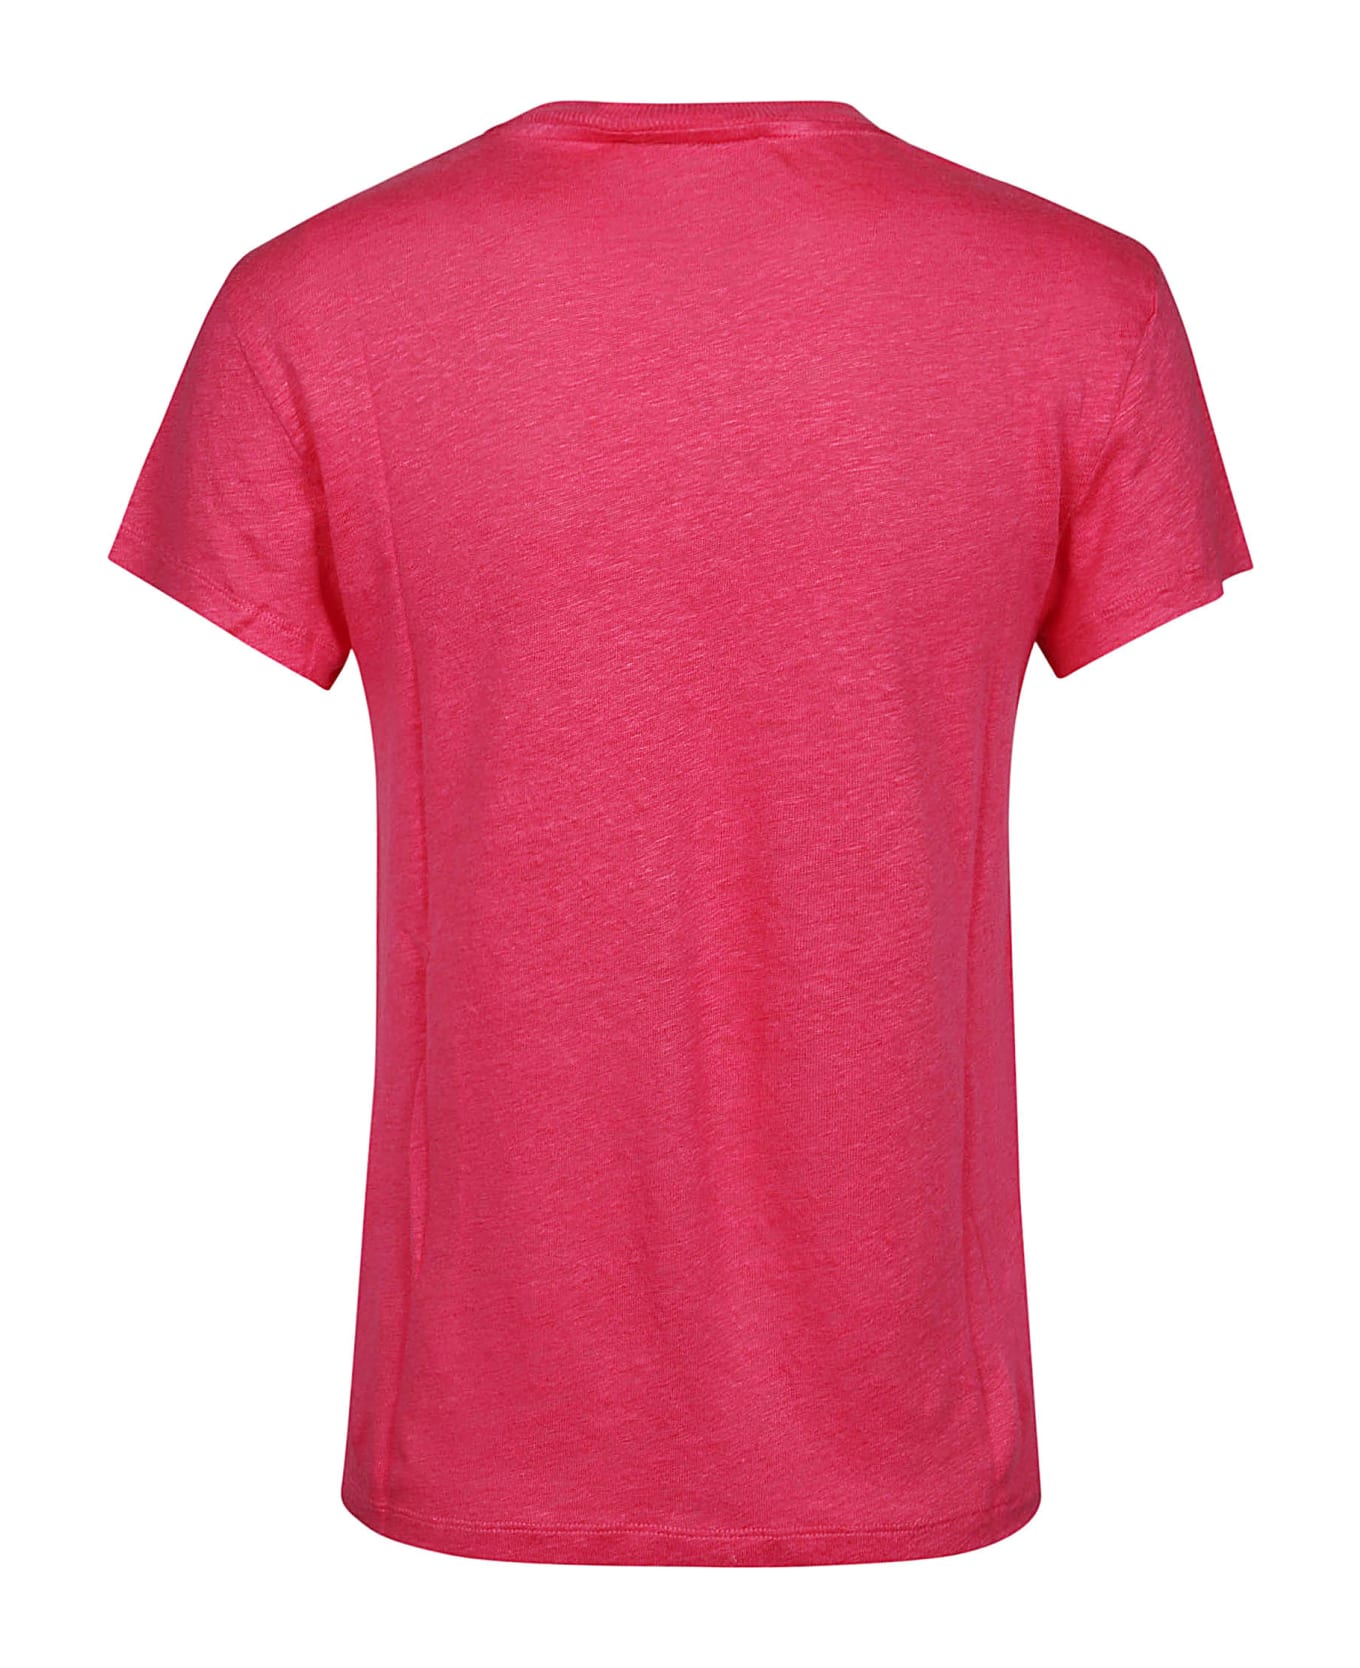 IRO Third T-shirt - Fushia Tシャツ